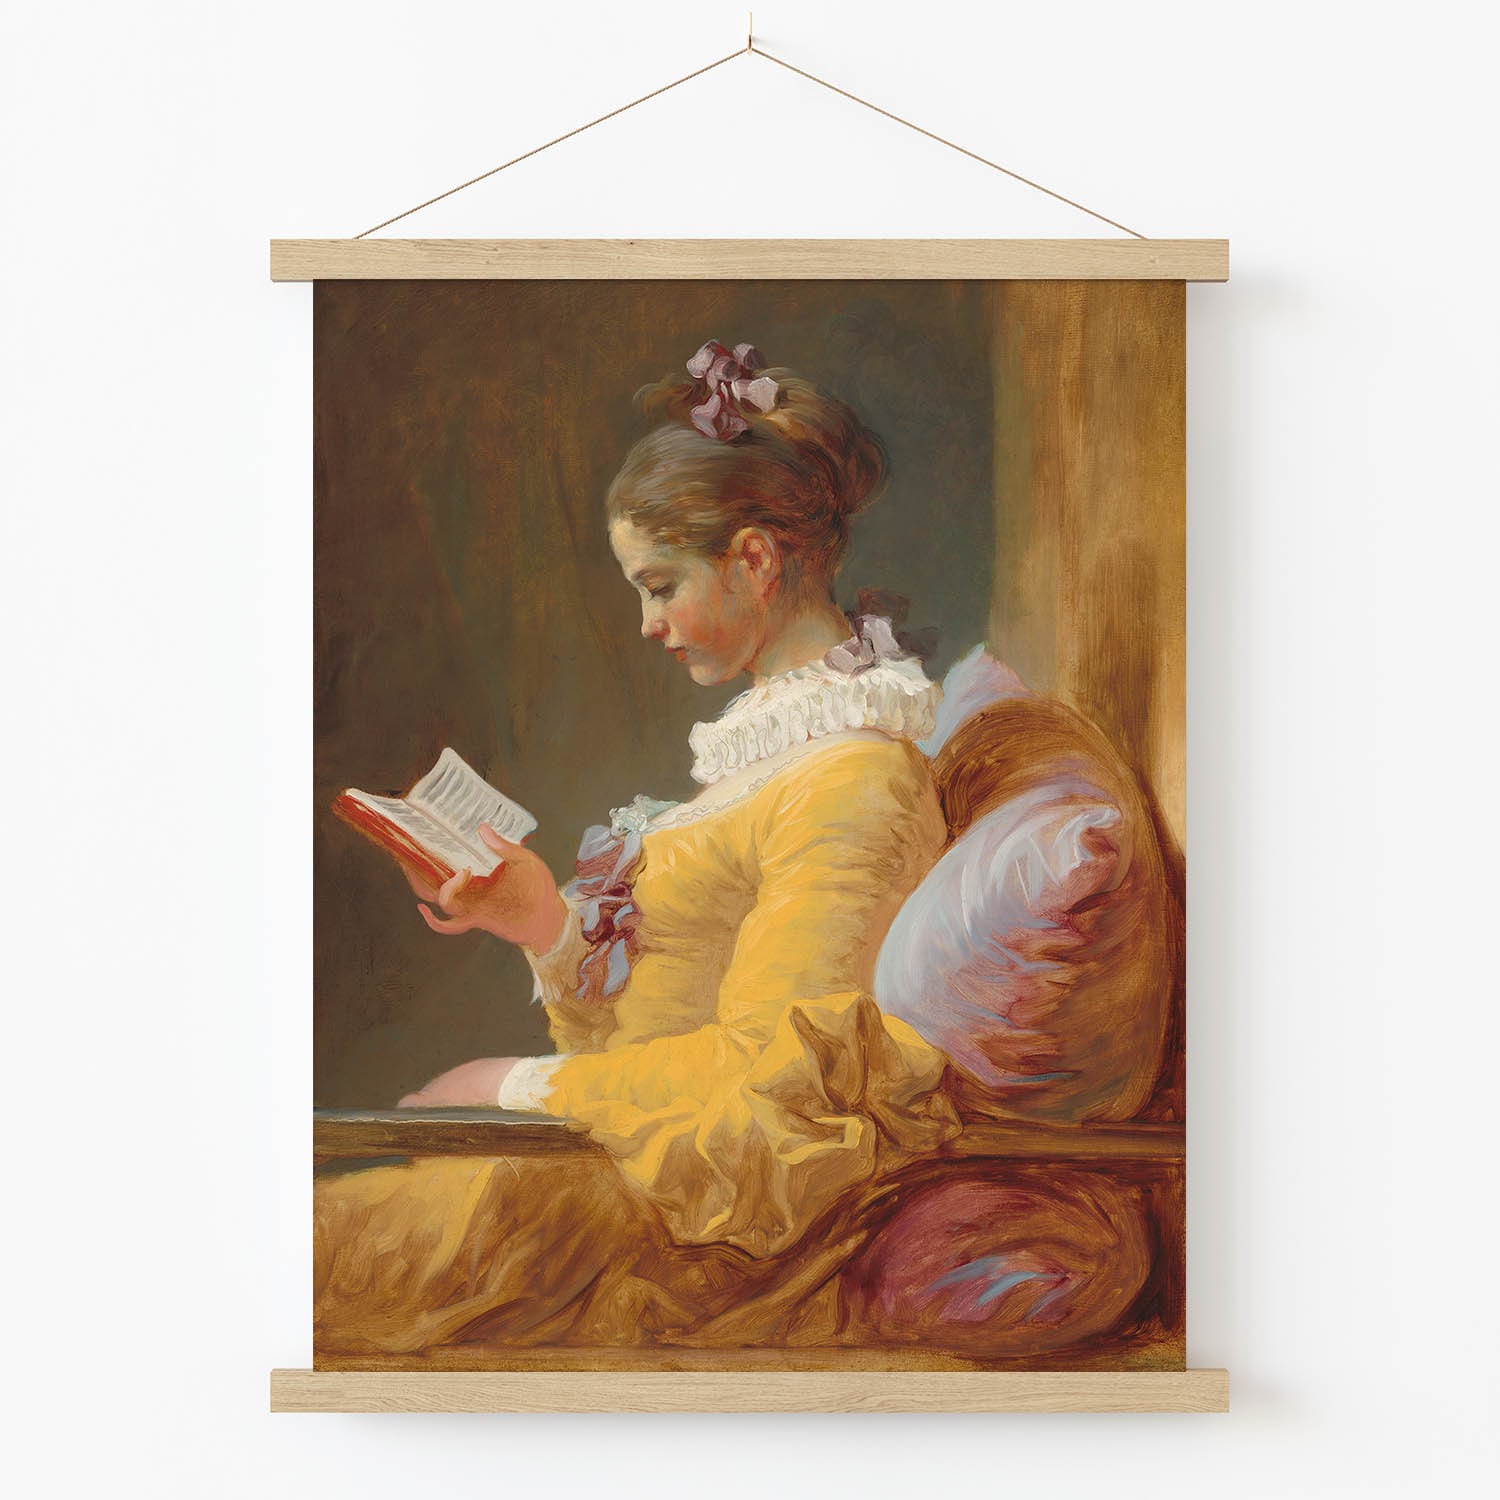 Reading Aesthetic Art Print in Wood Hanger Frame on Wall